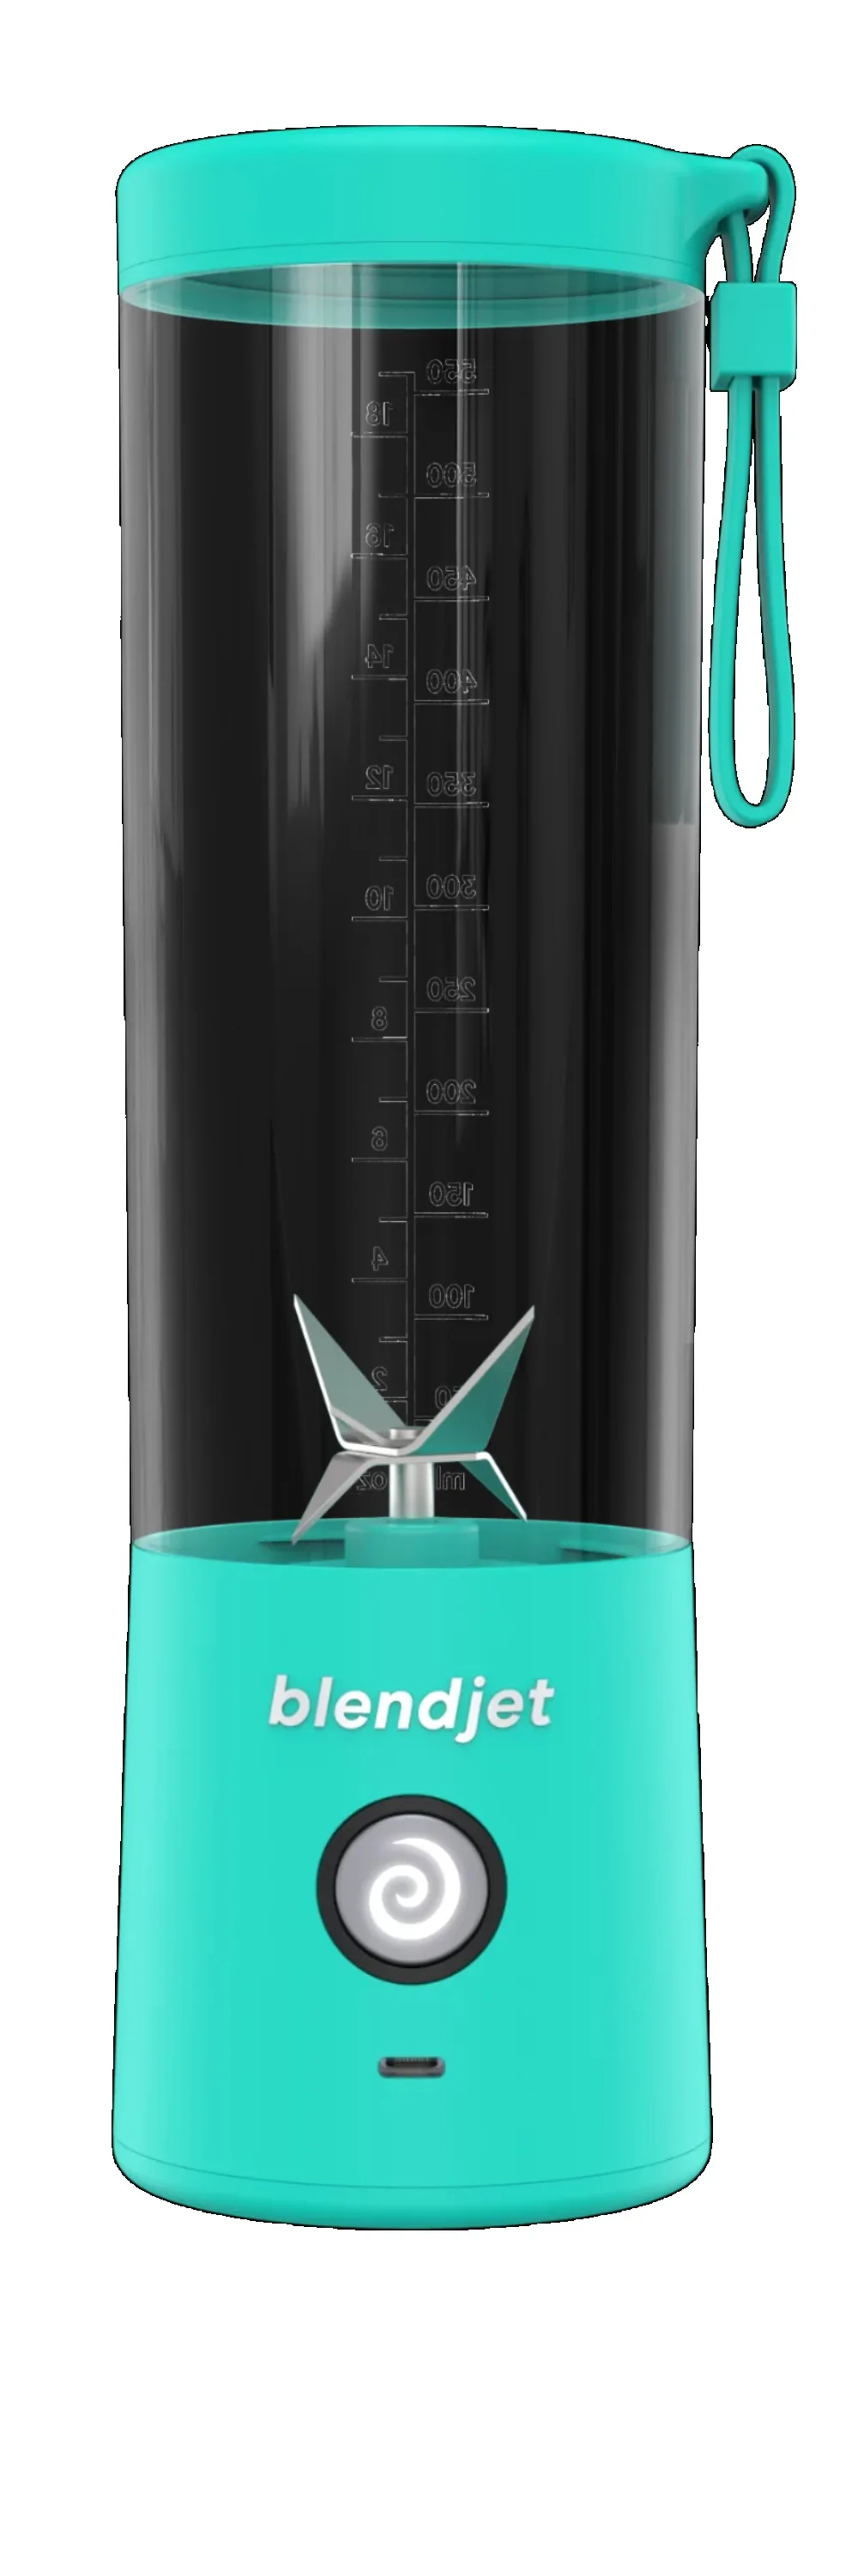 BlendJet 2, the Original Portable Blender, 20 oz, Black 